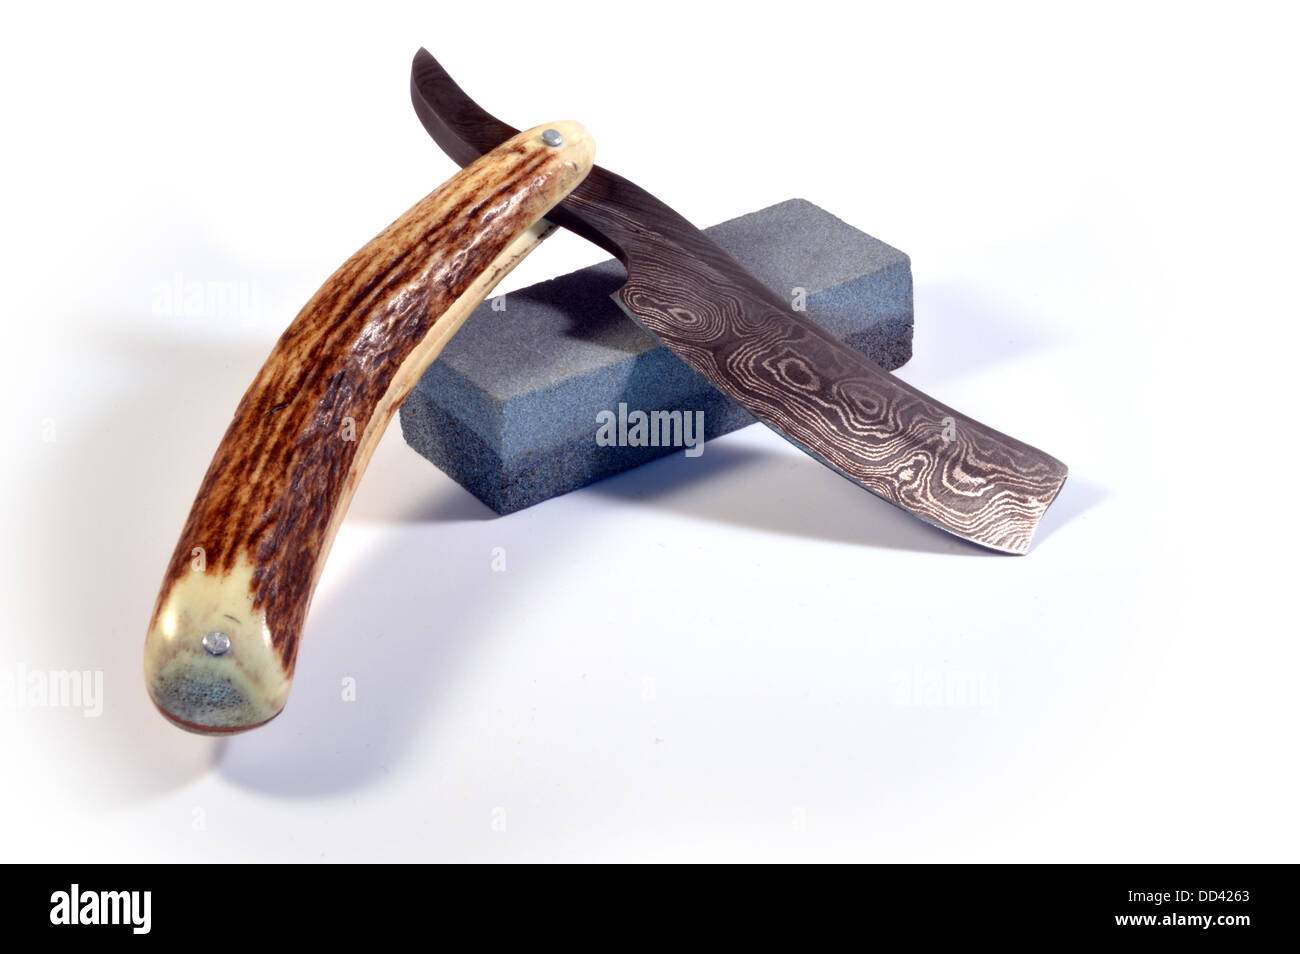 Kehle-Rasiermesser-Messer und Schleifstein Stockfoto